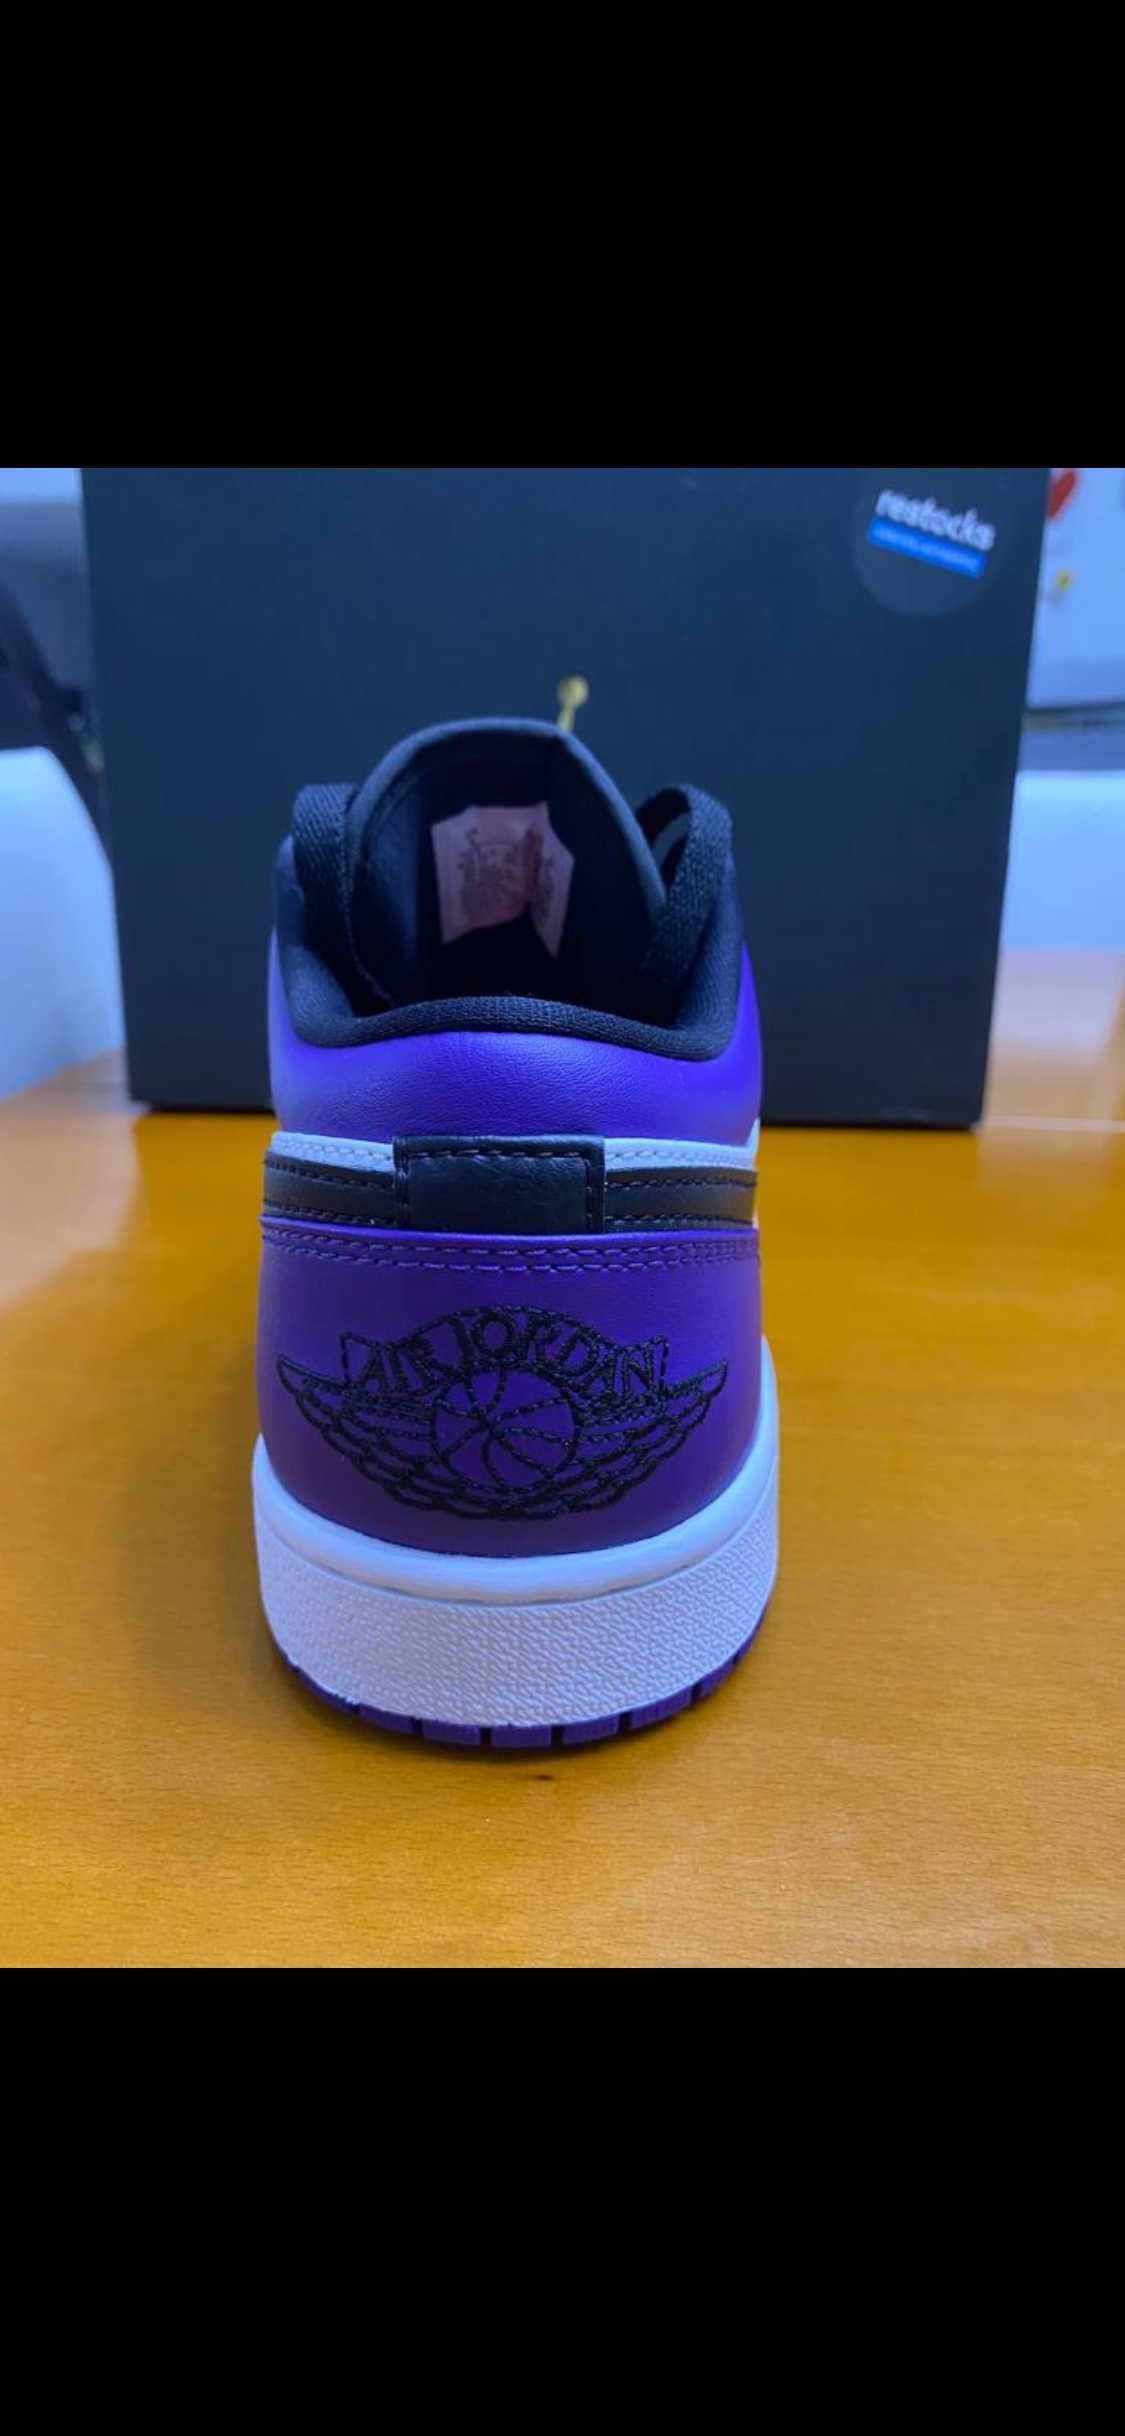 Air Jordan 1 Low Purple